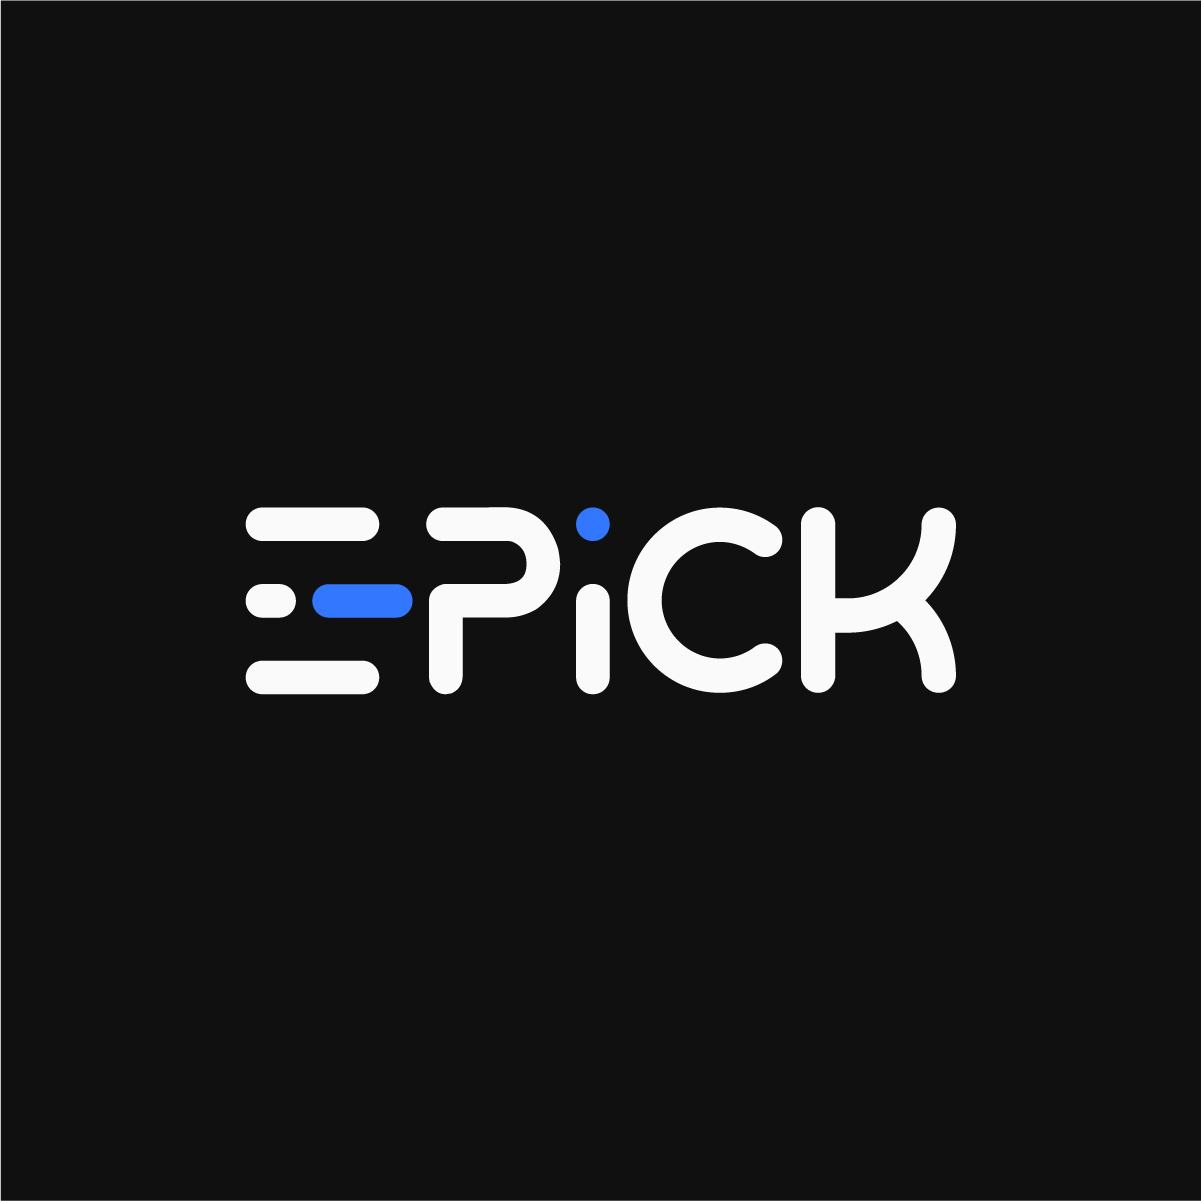 E-Pick